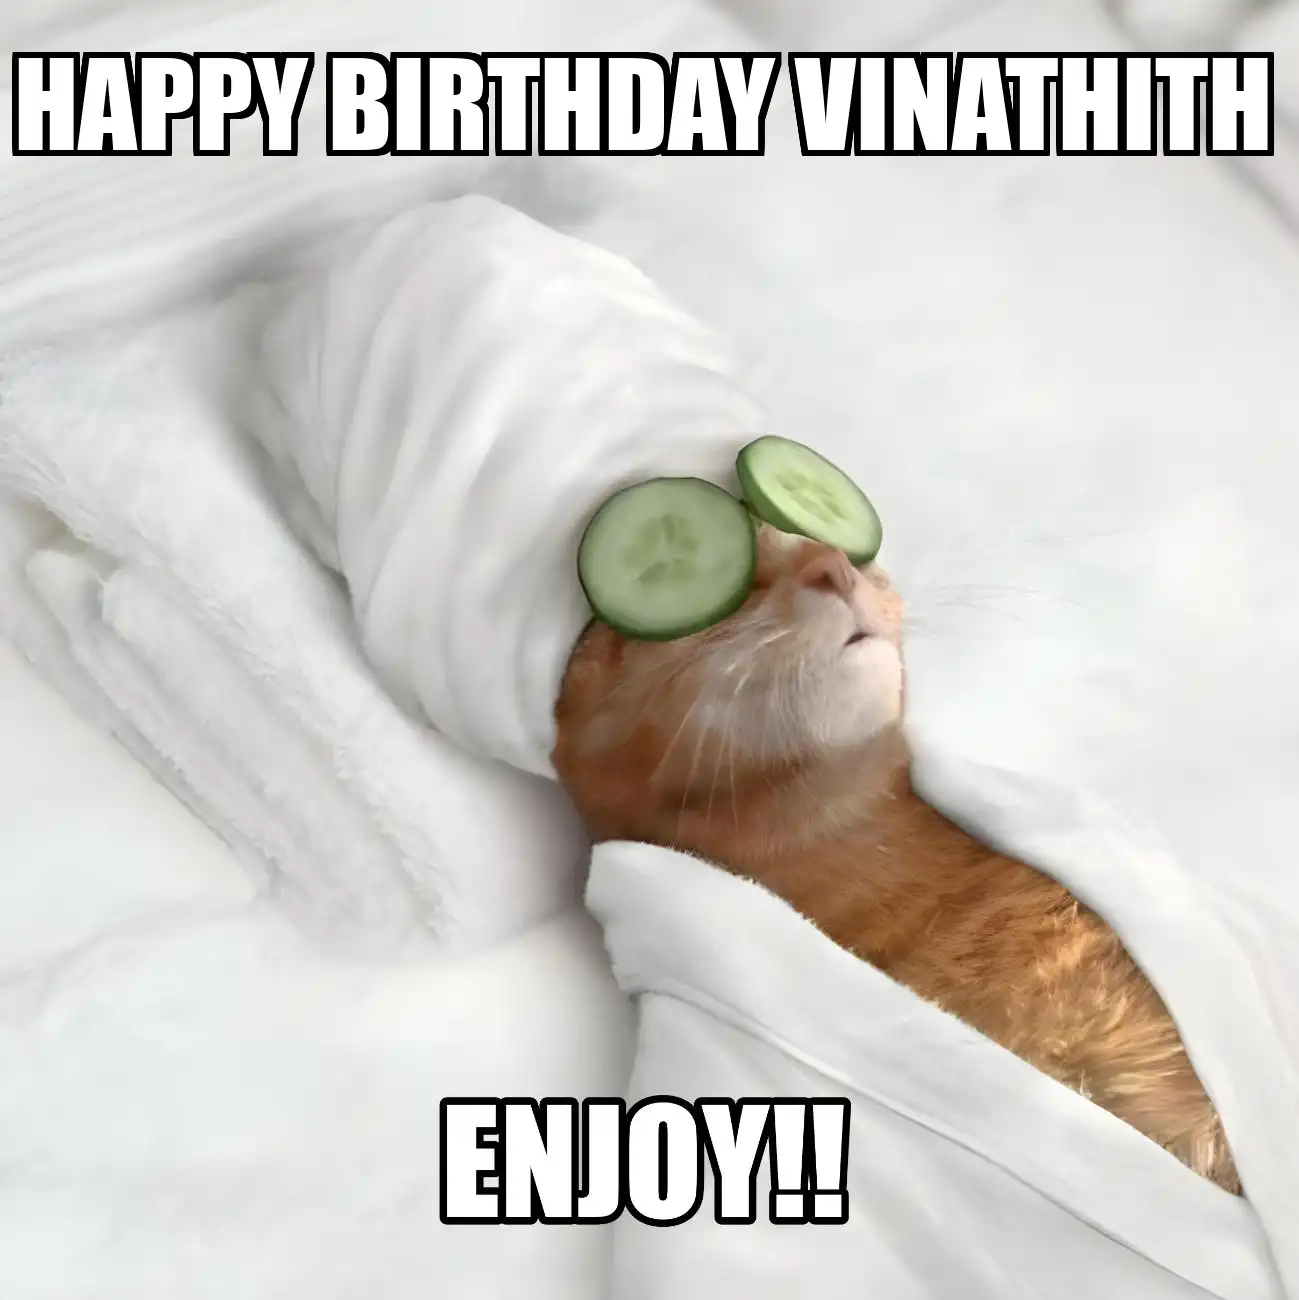 Happy Birthday Vinathith Enjoy Cat Meme